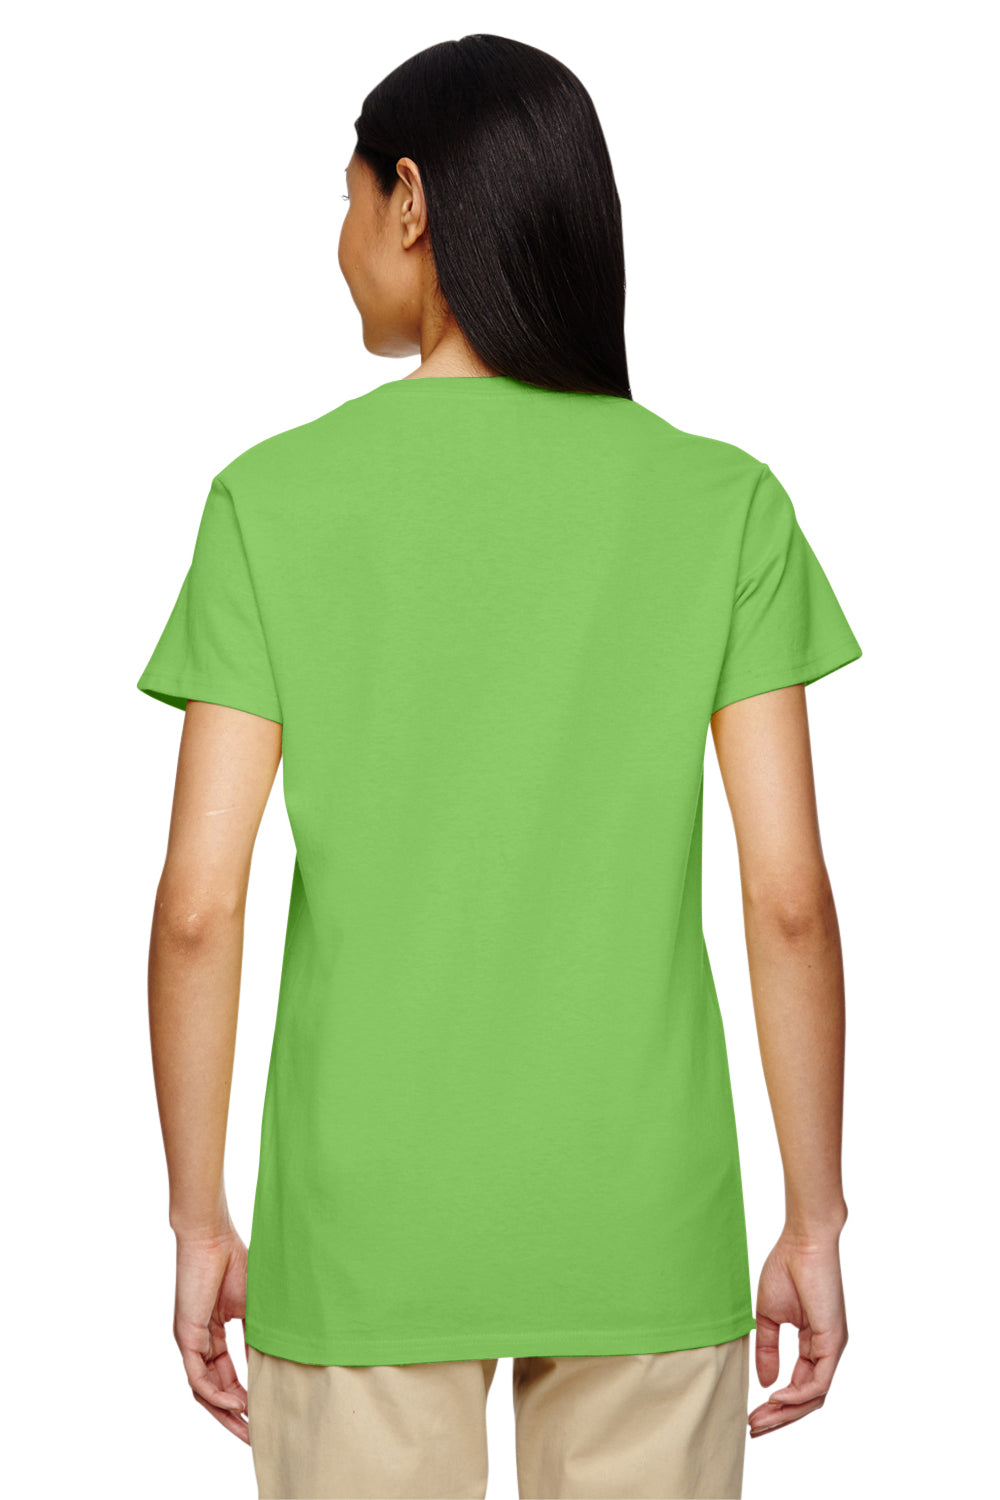 Gildan G500VL Womens Short Sleeve V-Neck T-Shirt Lime Green Back